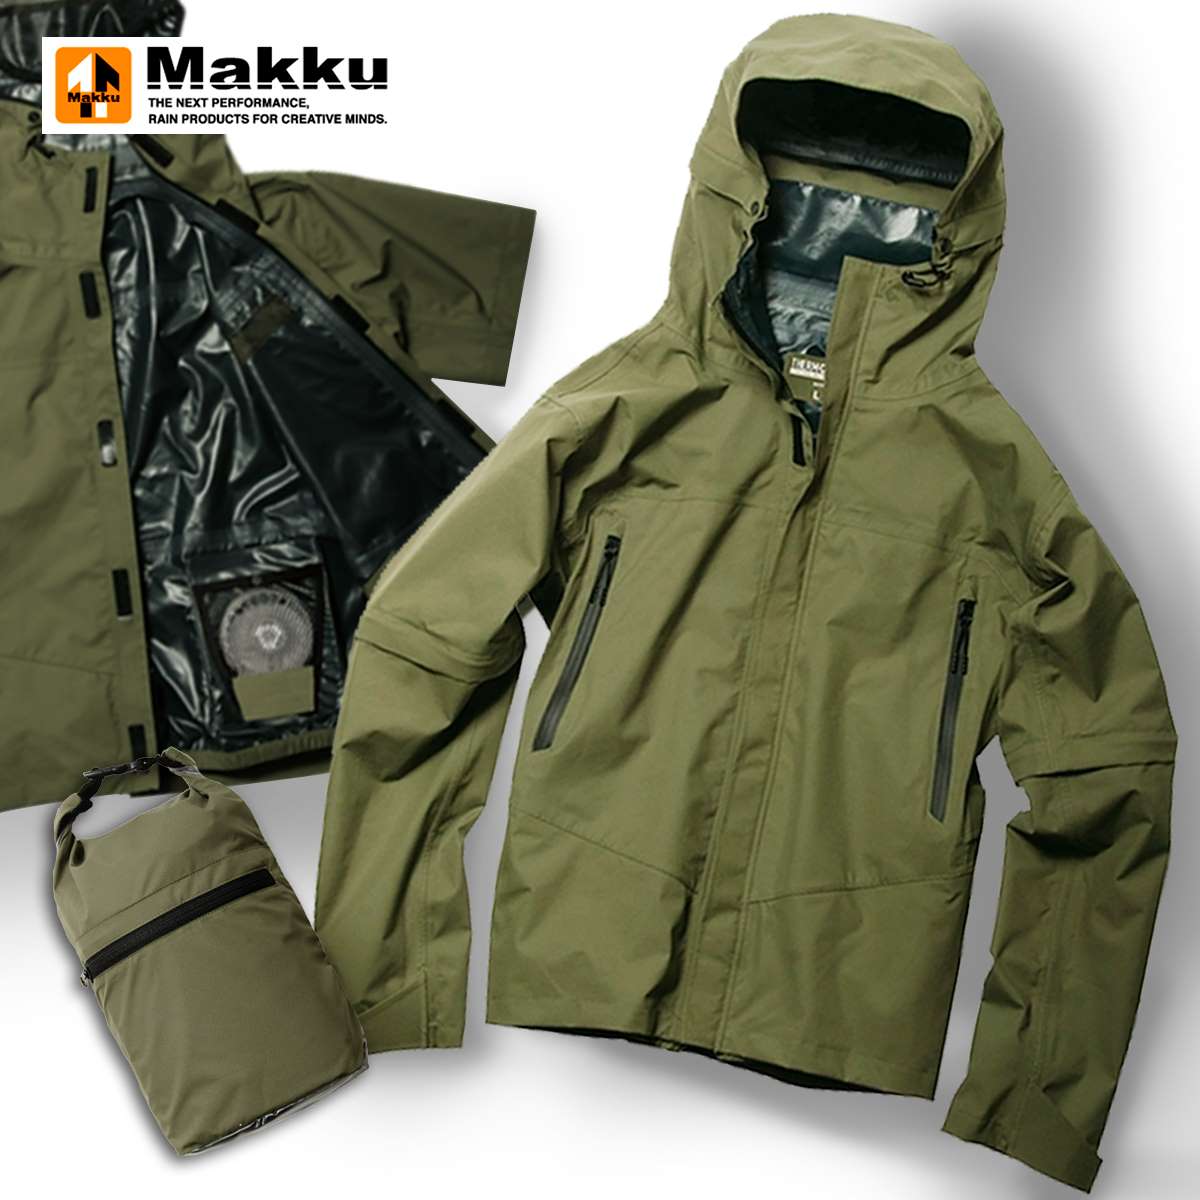 【空調ファン別売り】Makku マック エアーマウンテンレインジャケット MKU-AS931 ウェア レインウェア ジャケット 2way